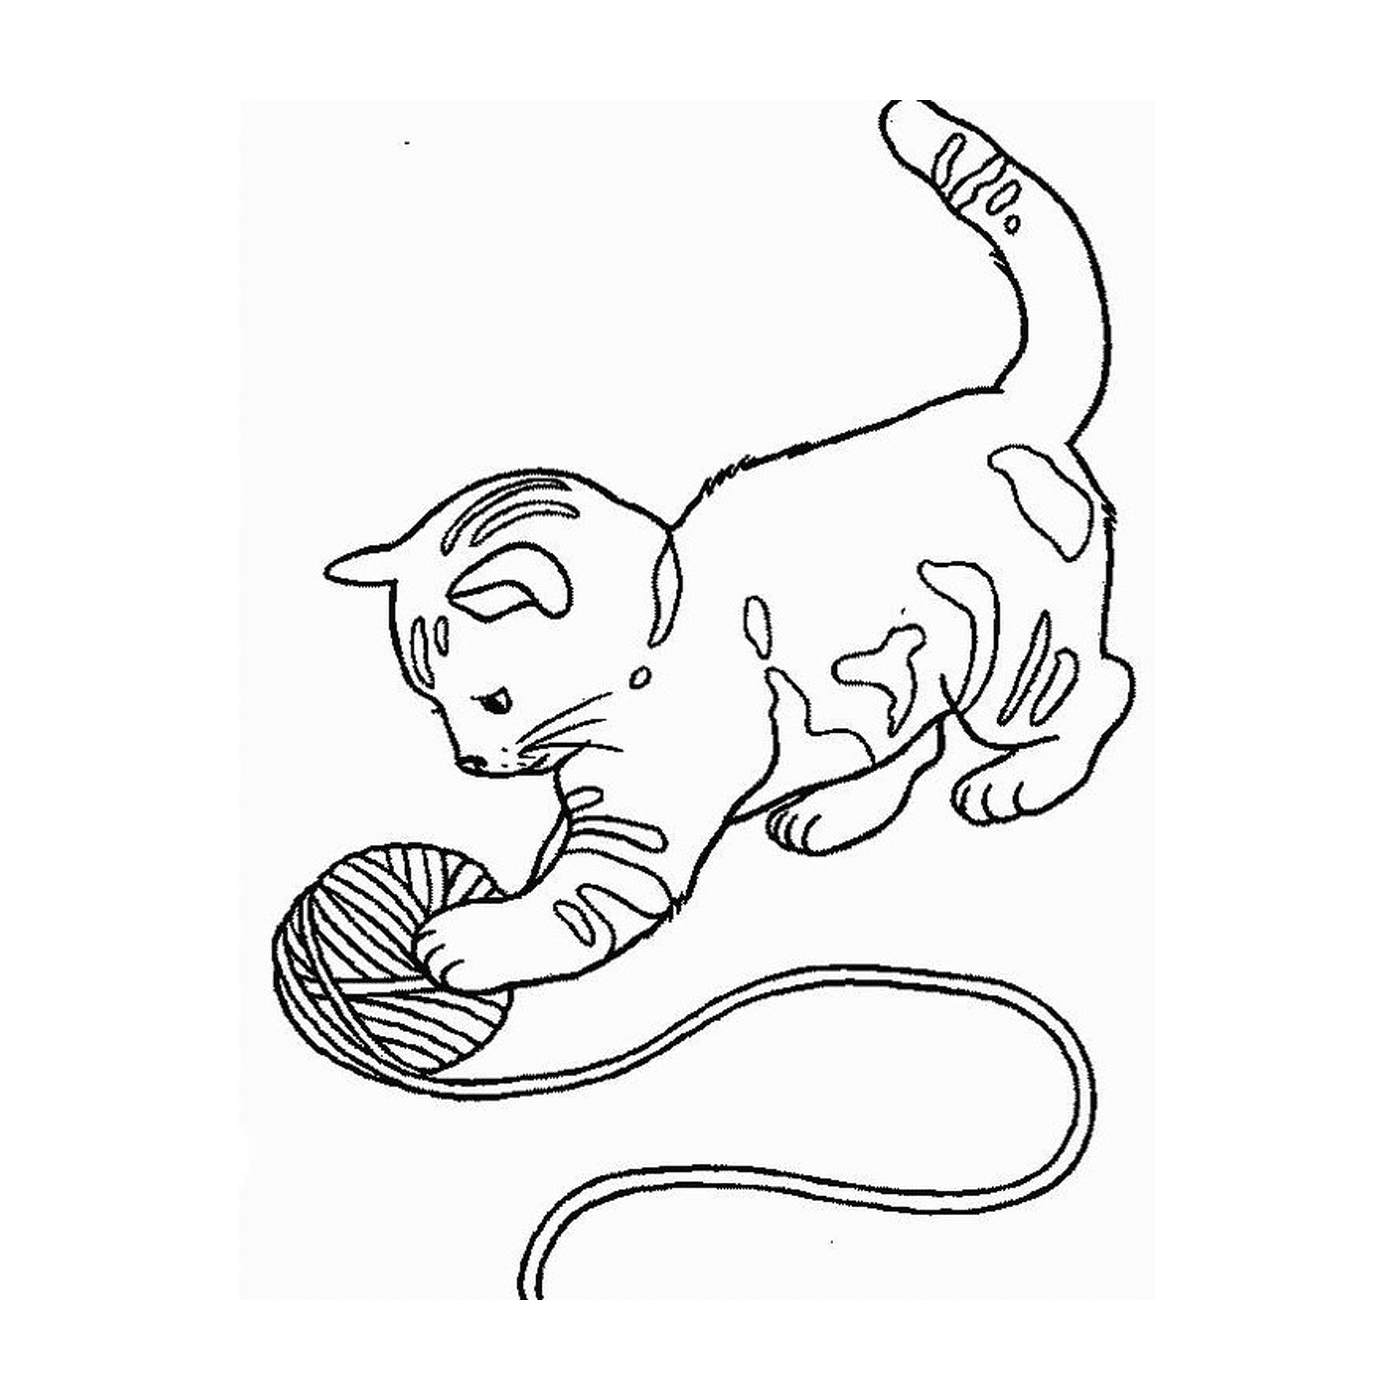  Un gatito jugando con una pelota 